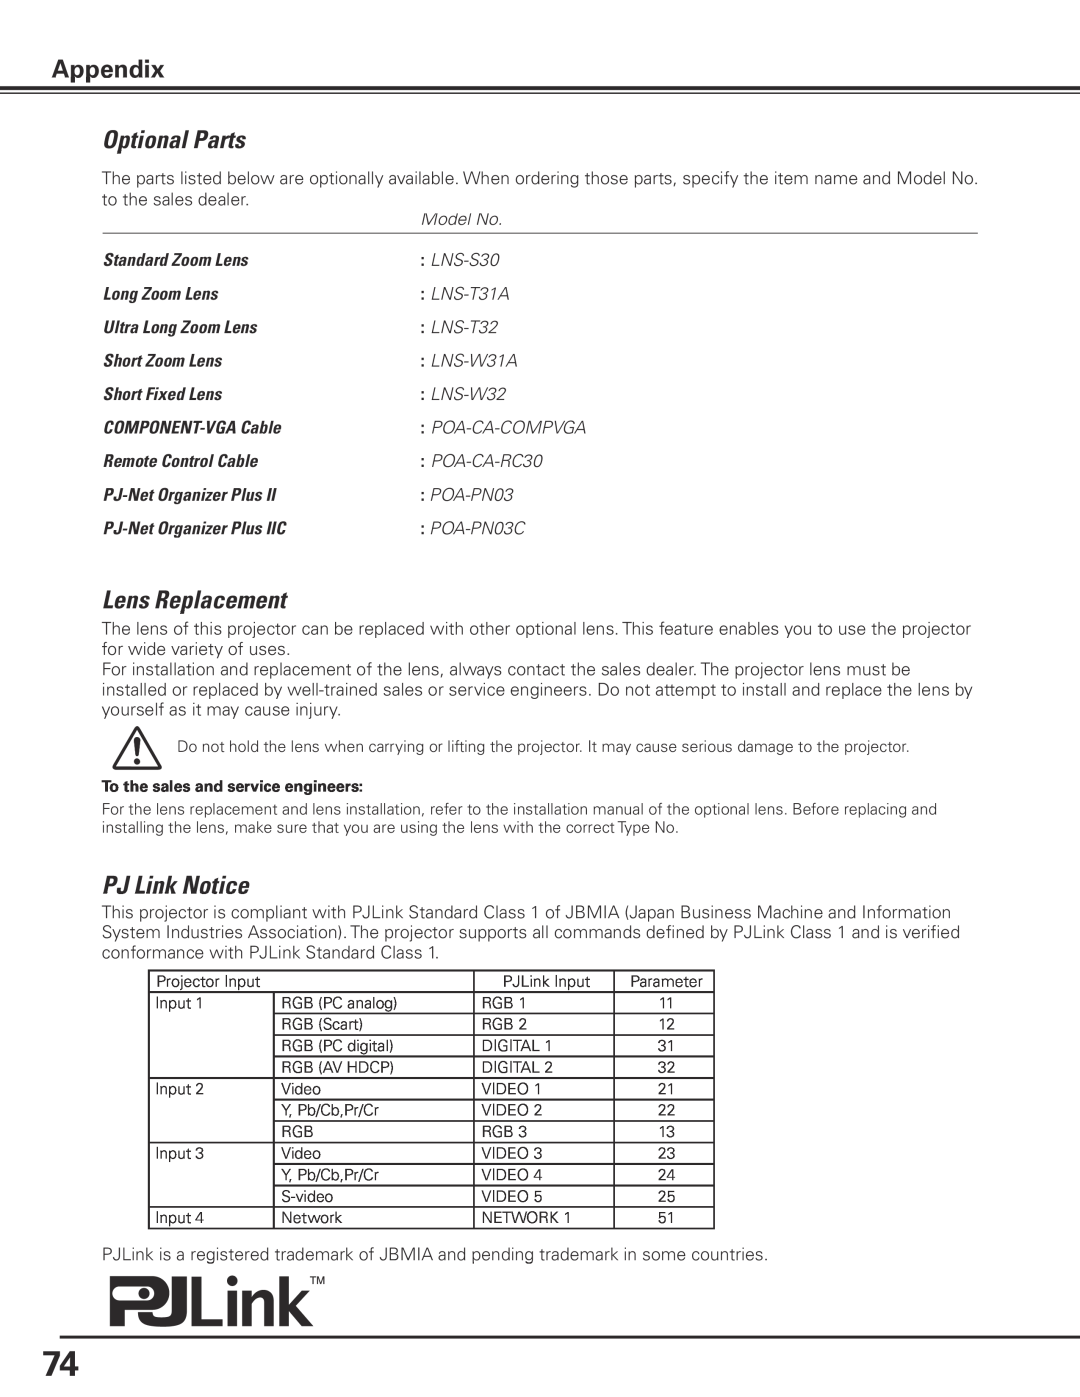 Sanyo PLC-XP100BKL, PLC-XP100L owner manual Optional Parts, Lens Replacement, PJ Link Notice, Appendix 